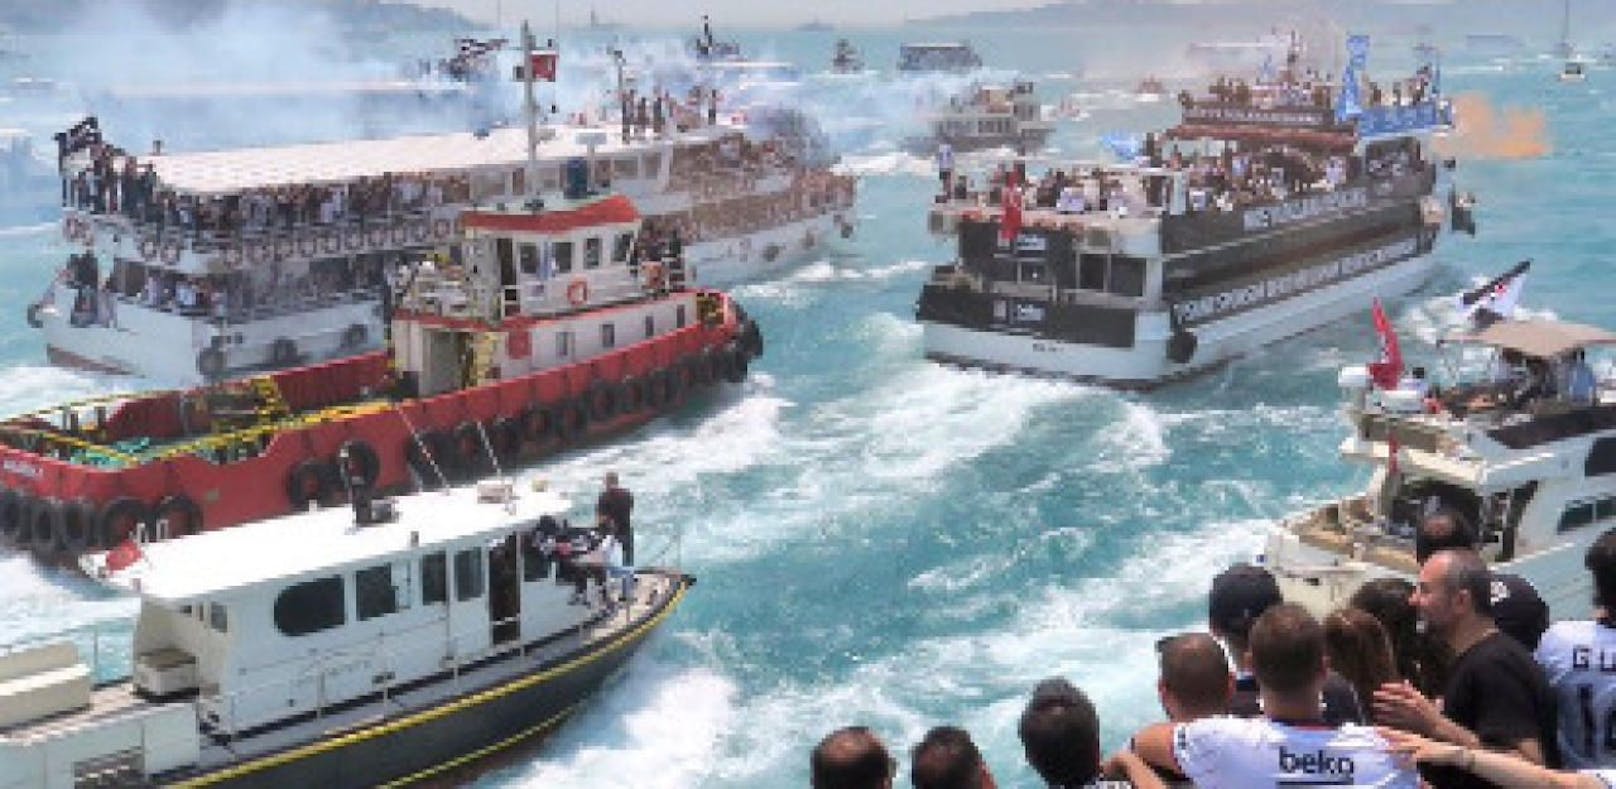 Besiktas feiert Titel mit 100 Booten am Bosporus